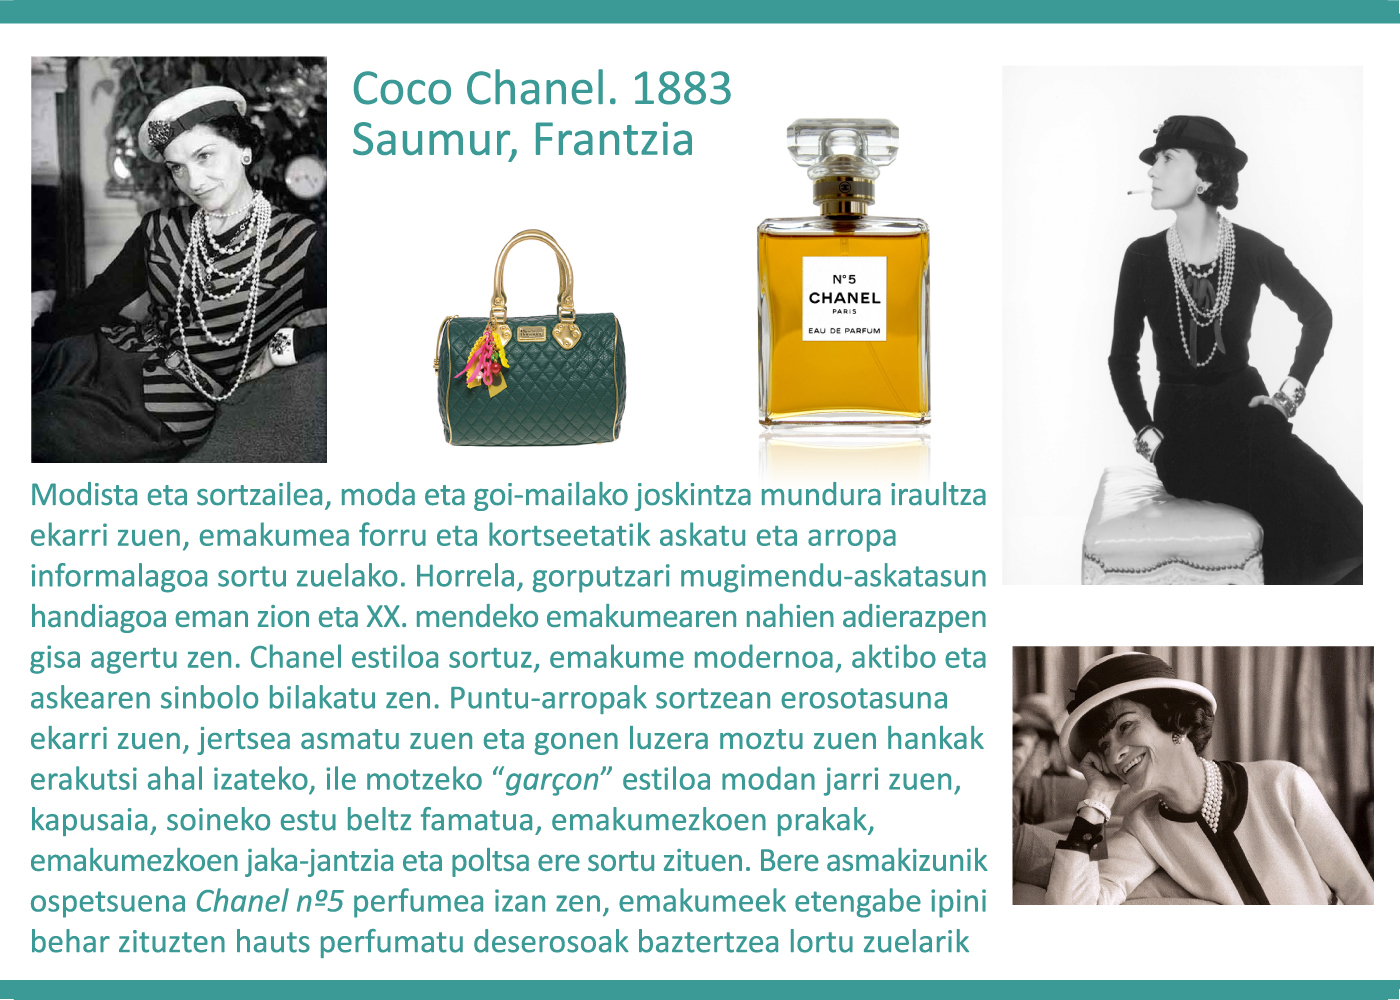 Coco Chanel, 1883. Modista eta sortzailea